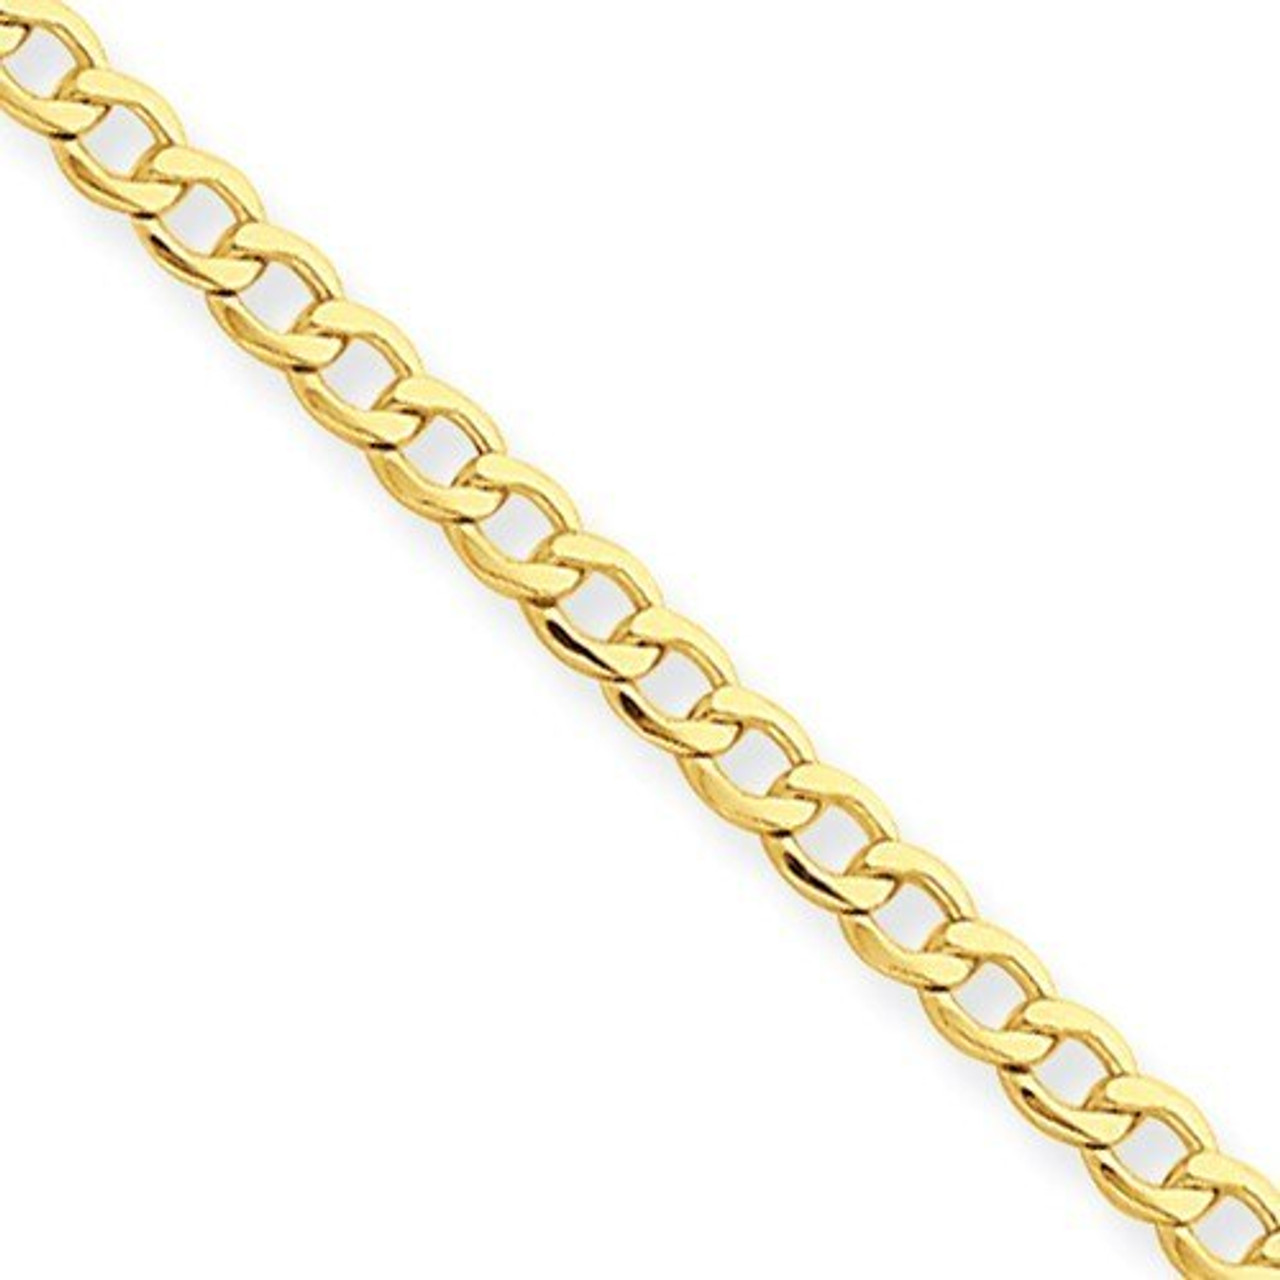 10k Yellow Gold Heavy Cuban Link Chain Bracelet - 8